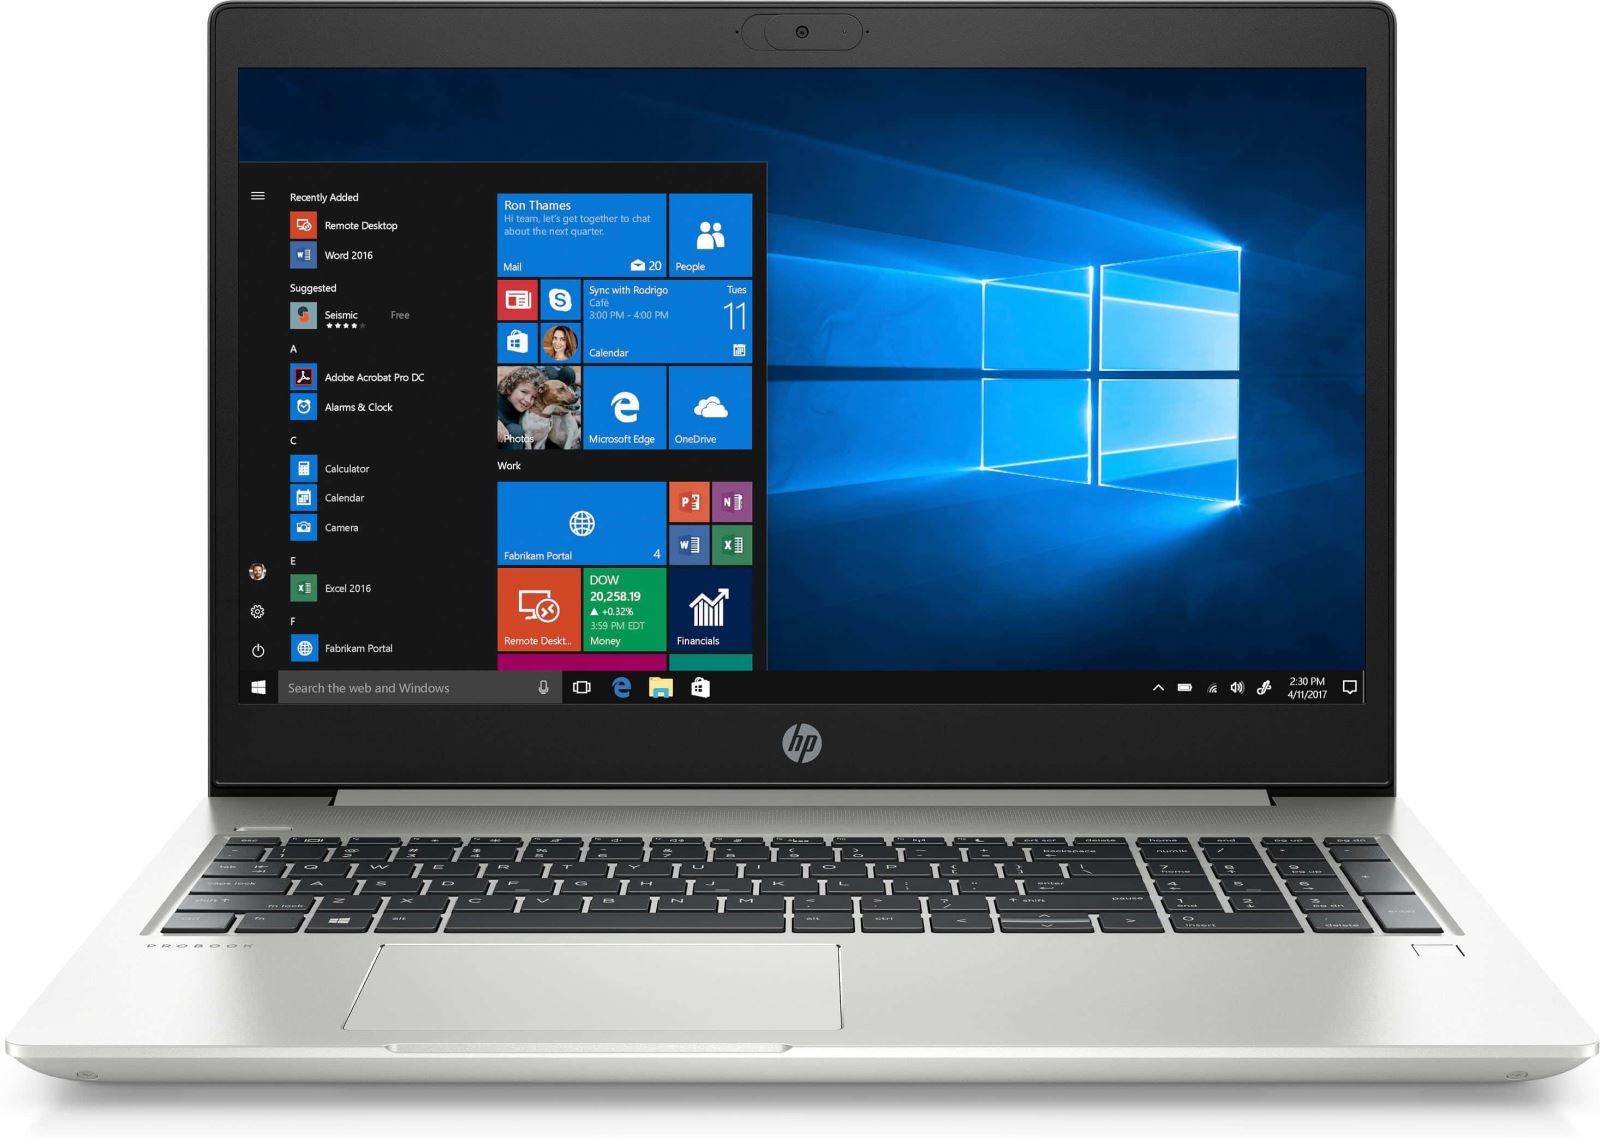 Laptop HP ProBook 450 G7, 15.6" LED FHD Anti-Glare, i5-10210U, NVIDIA GeForce MX250 2GB GDDR5, RAM 8GB, SSD 256 GB + HDD 1TB, Windows 10 PRO 64bit